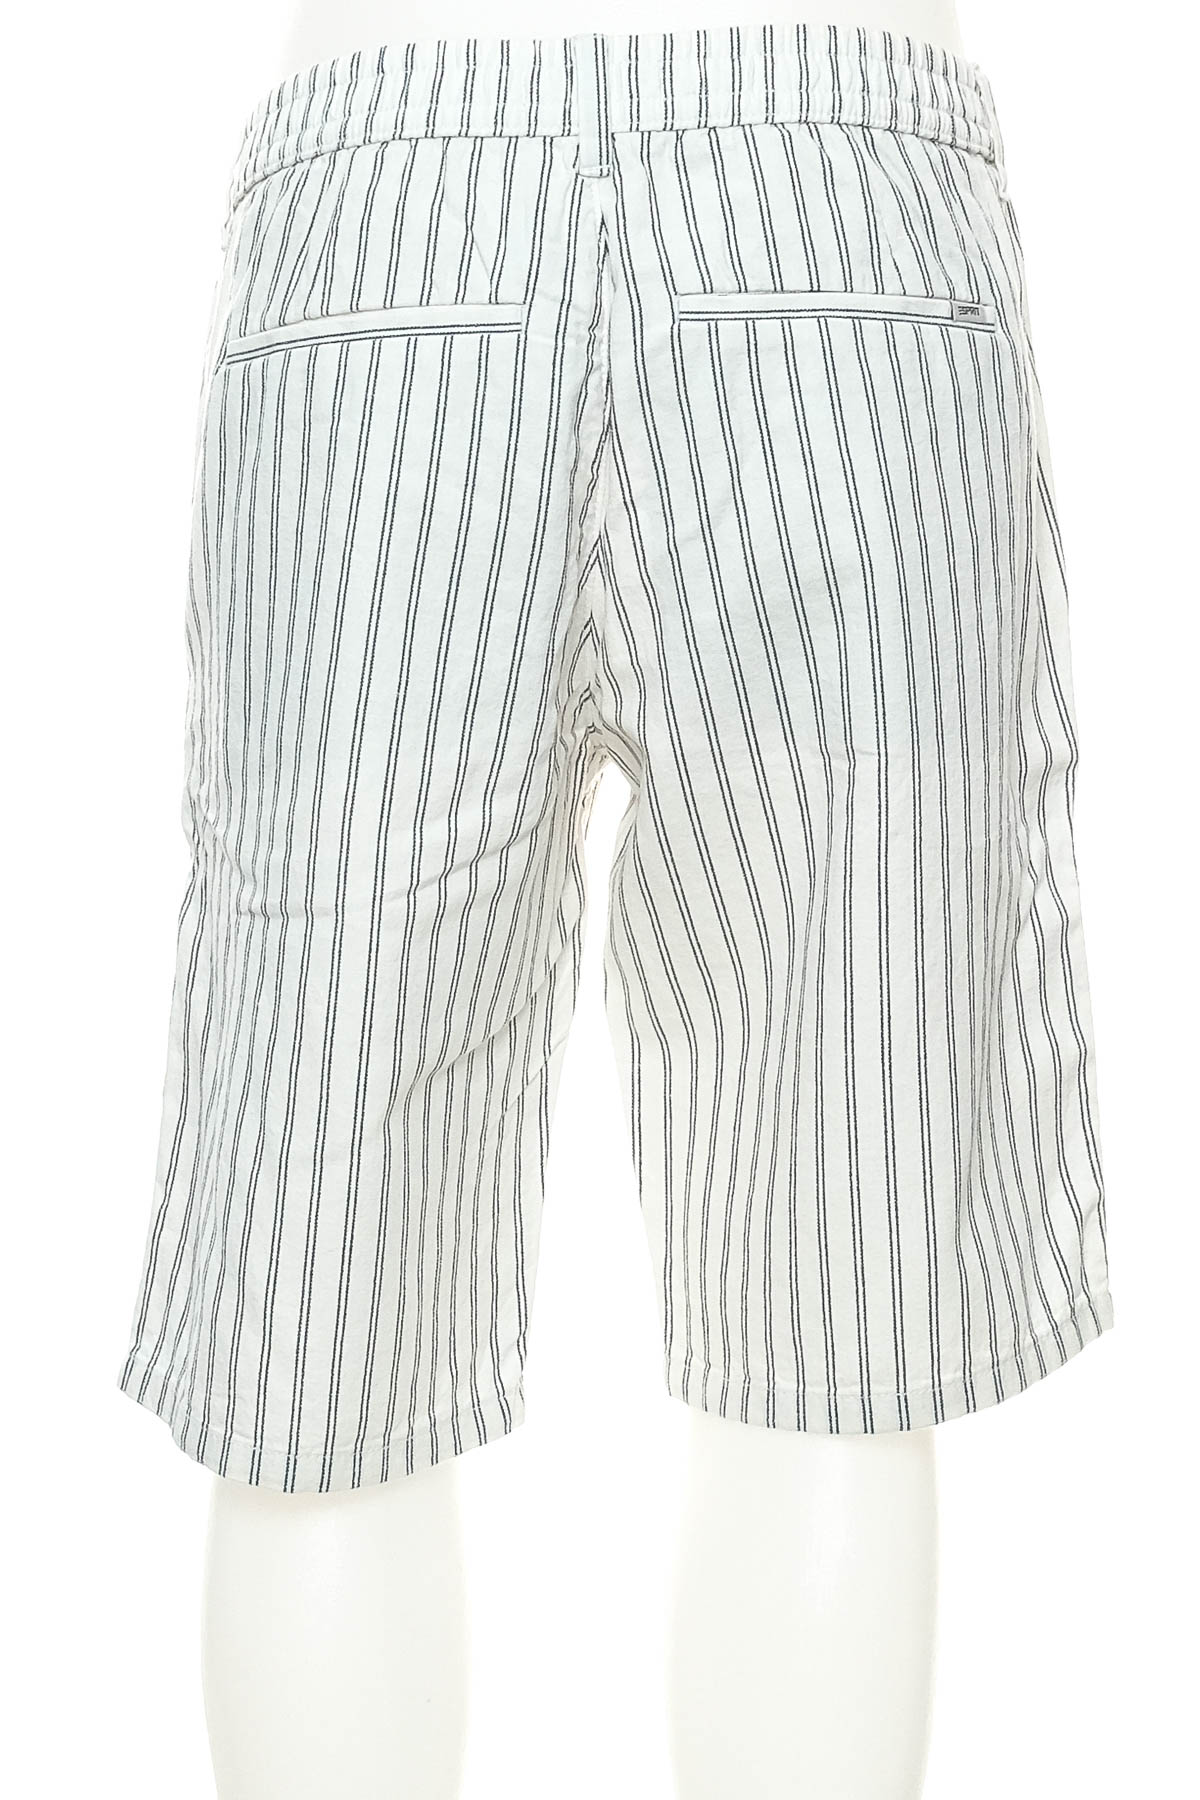 Men's shorts - ESPRIT - 1